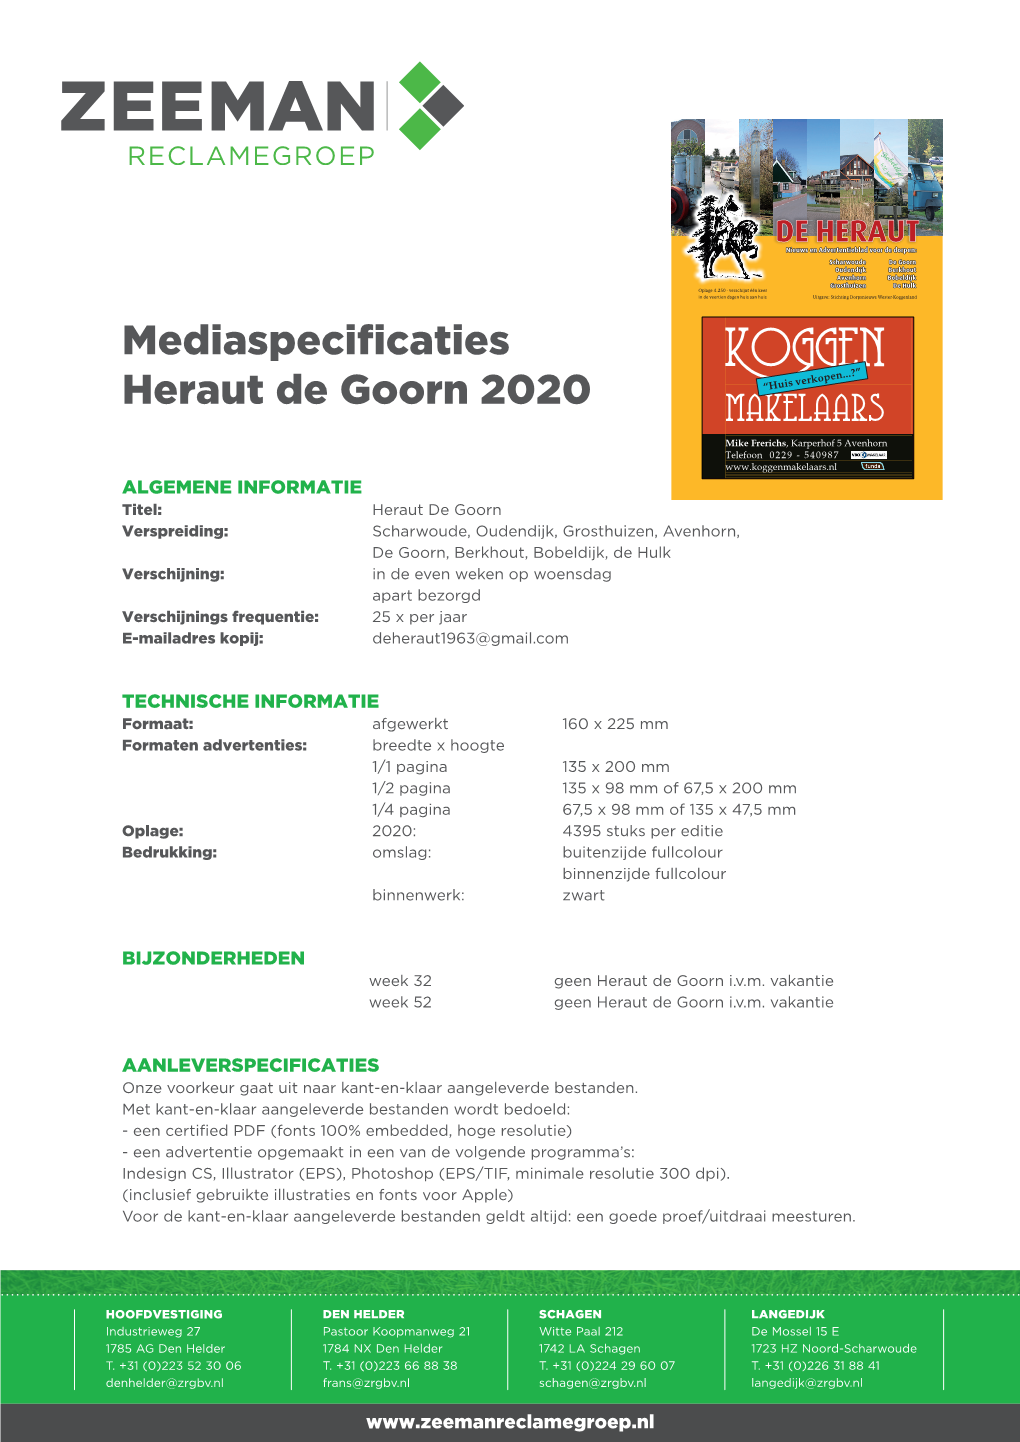 Mediaspecificaties Heraut De Goorn 2020 “Huis Verkopen...?”